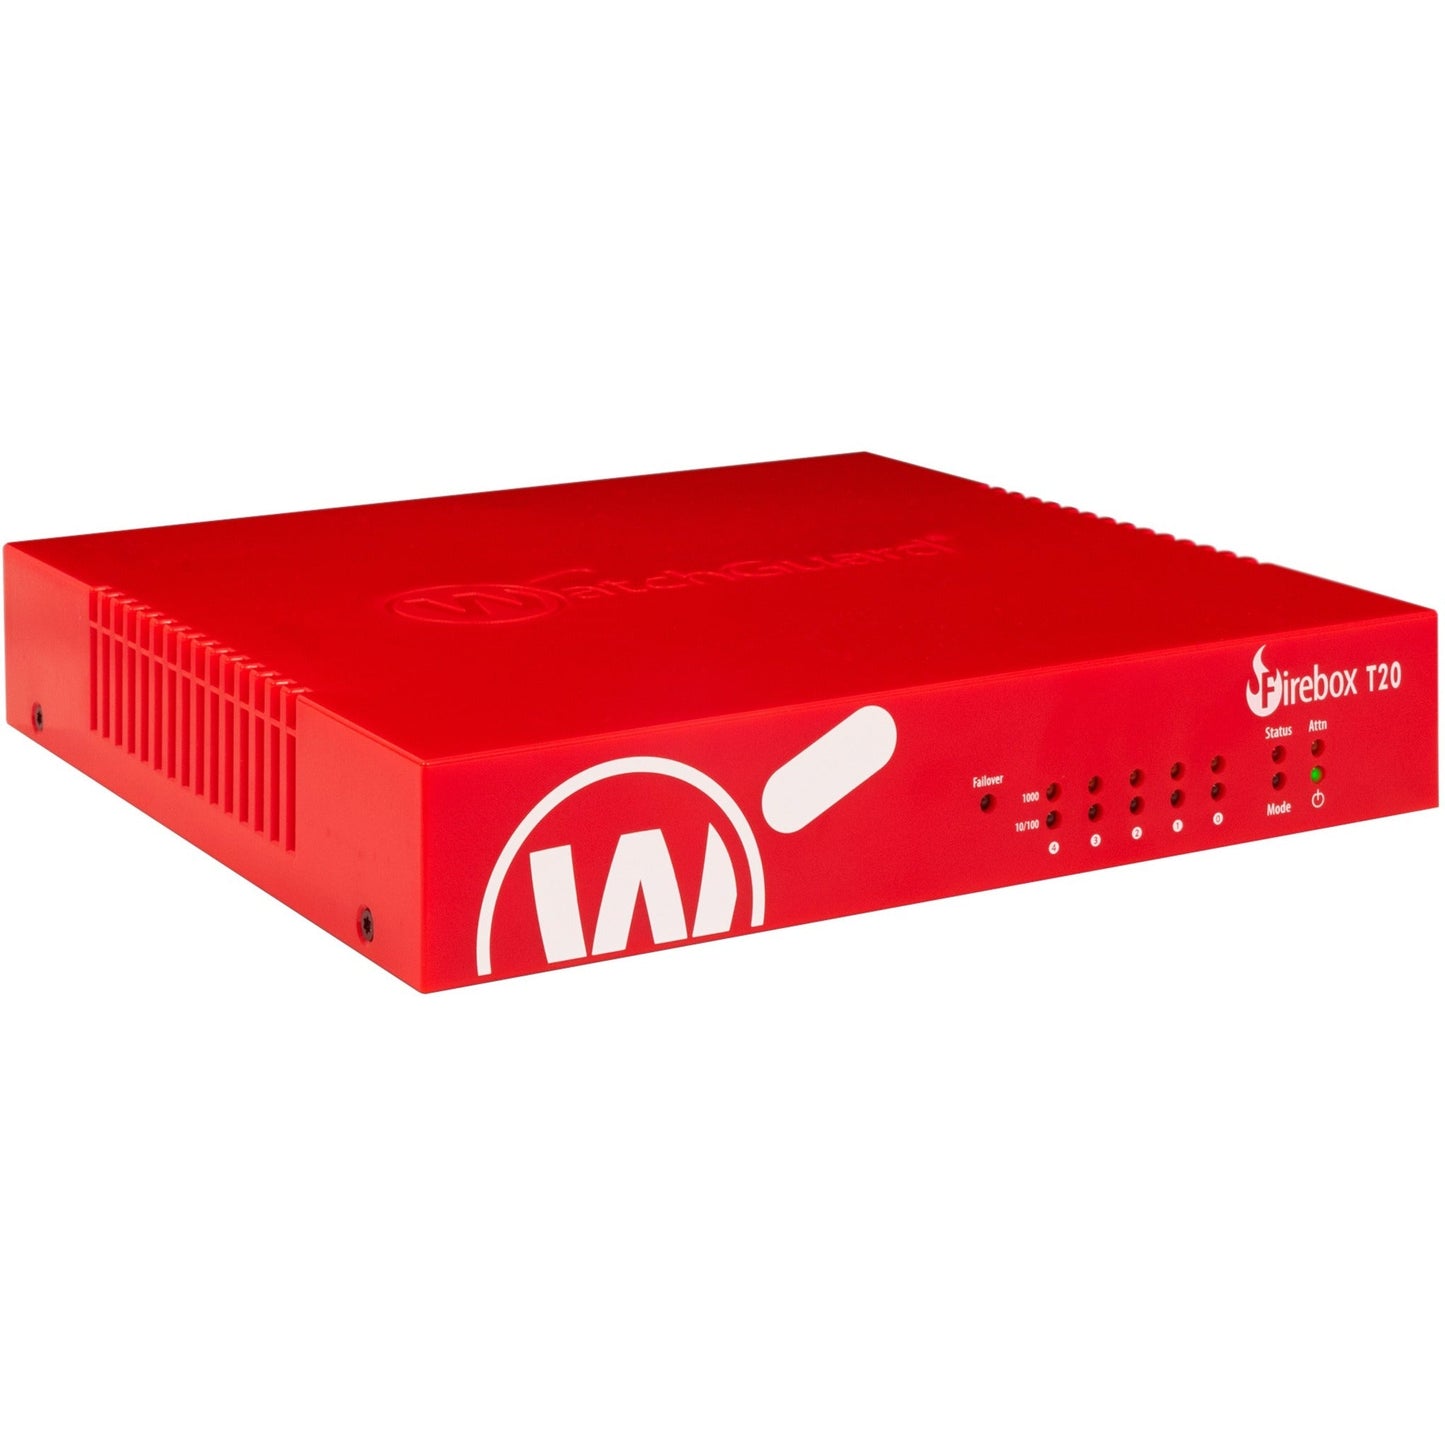 WatchGuard Firebox T20 Network Security/Firewall Appliance